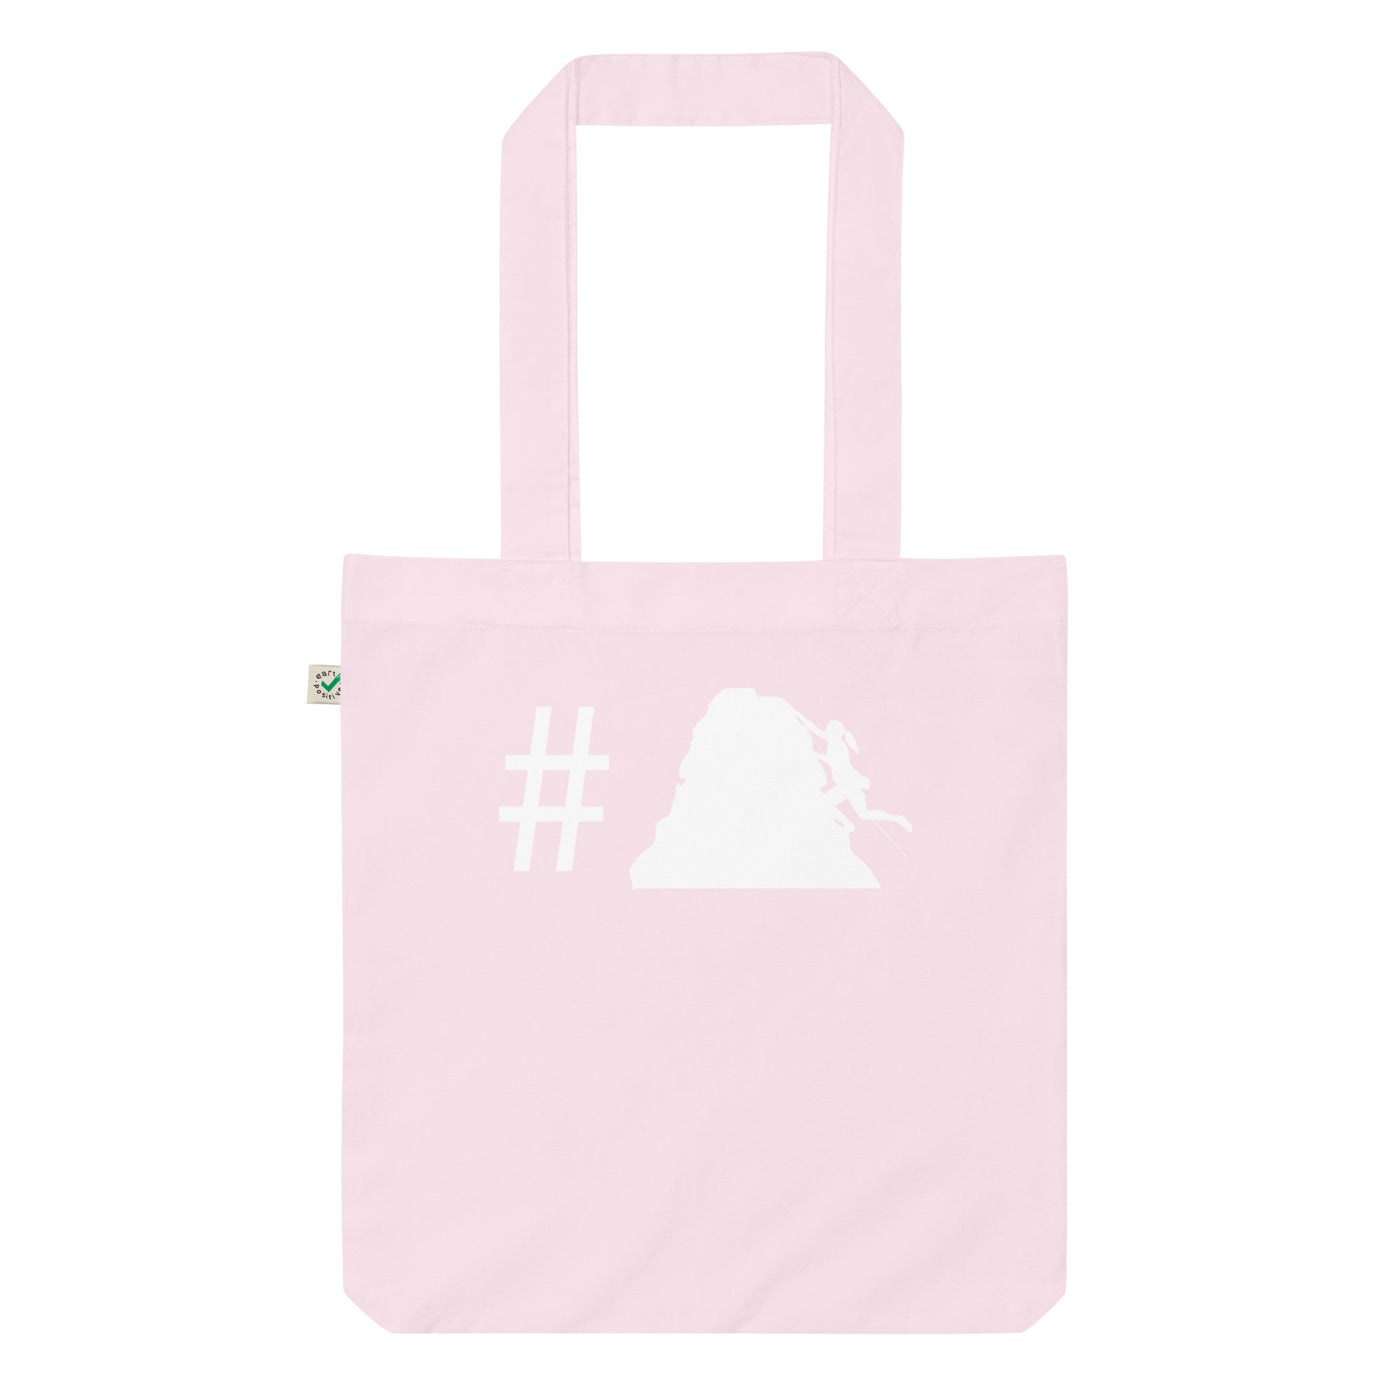 Hashtag - Klettern Für Frauen - Organic Einkaufstasche klettern Candy Pink